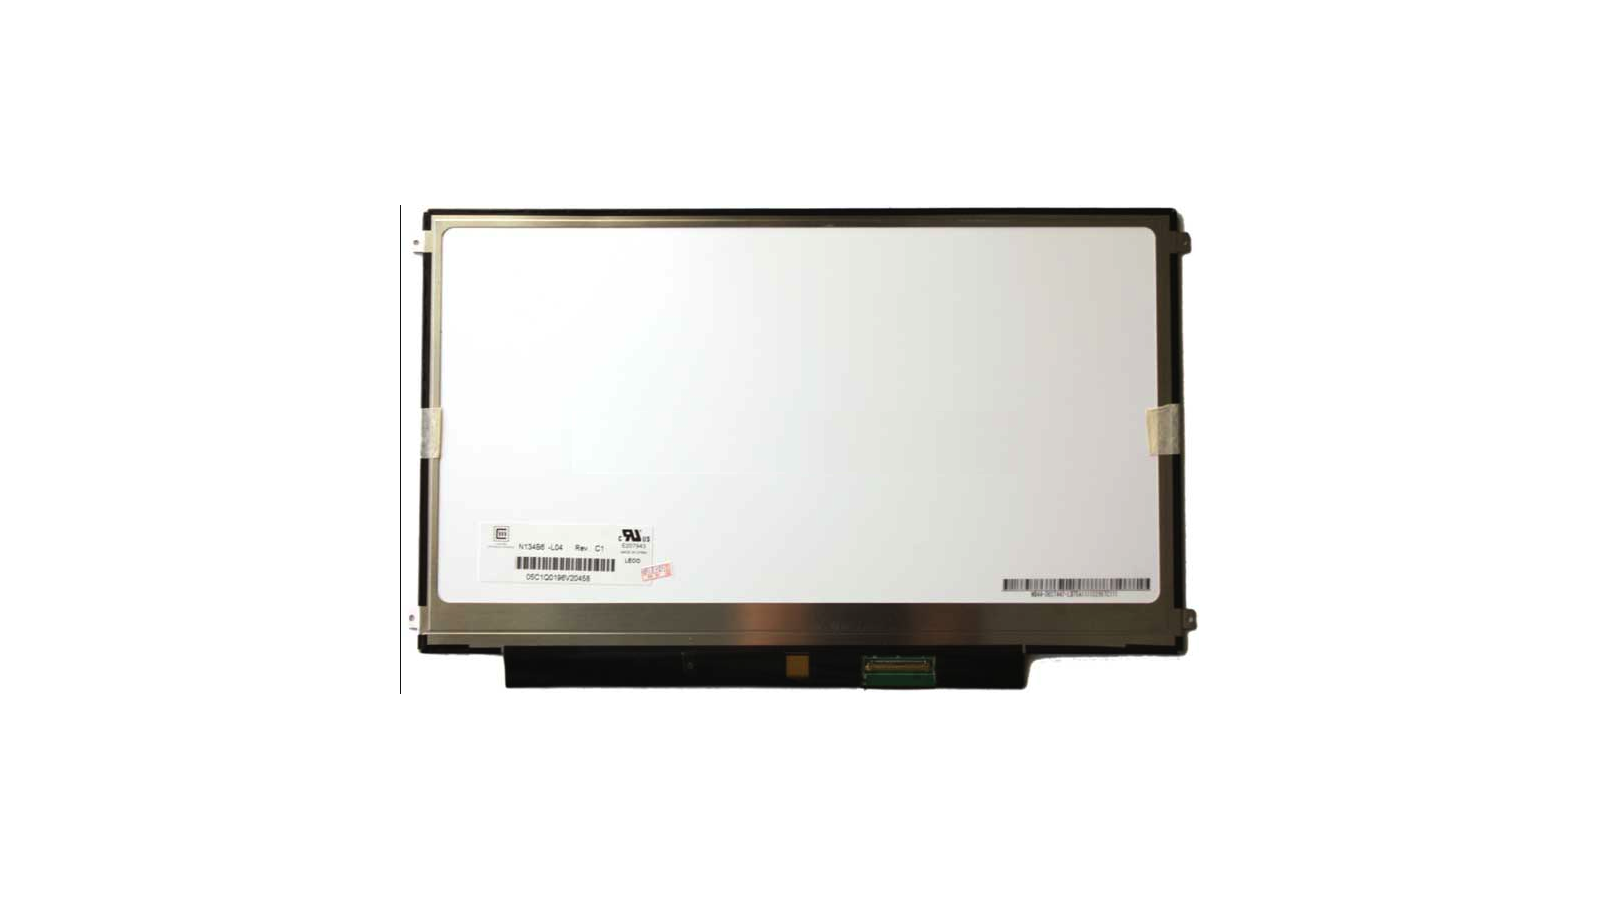 Display LCD Schermo 13,4 Led compatibile con N134B6-L04 REV.A1